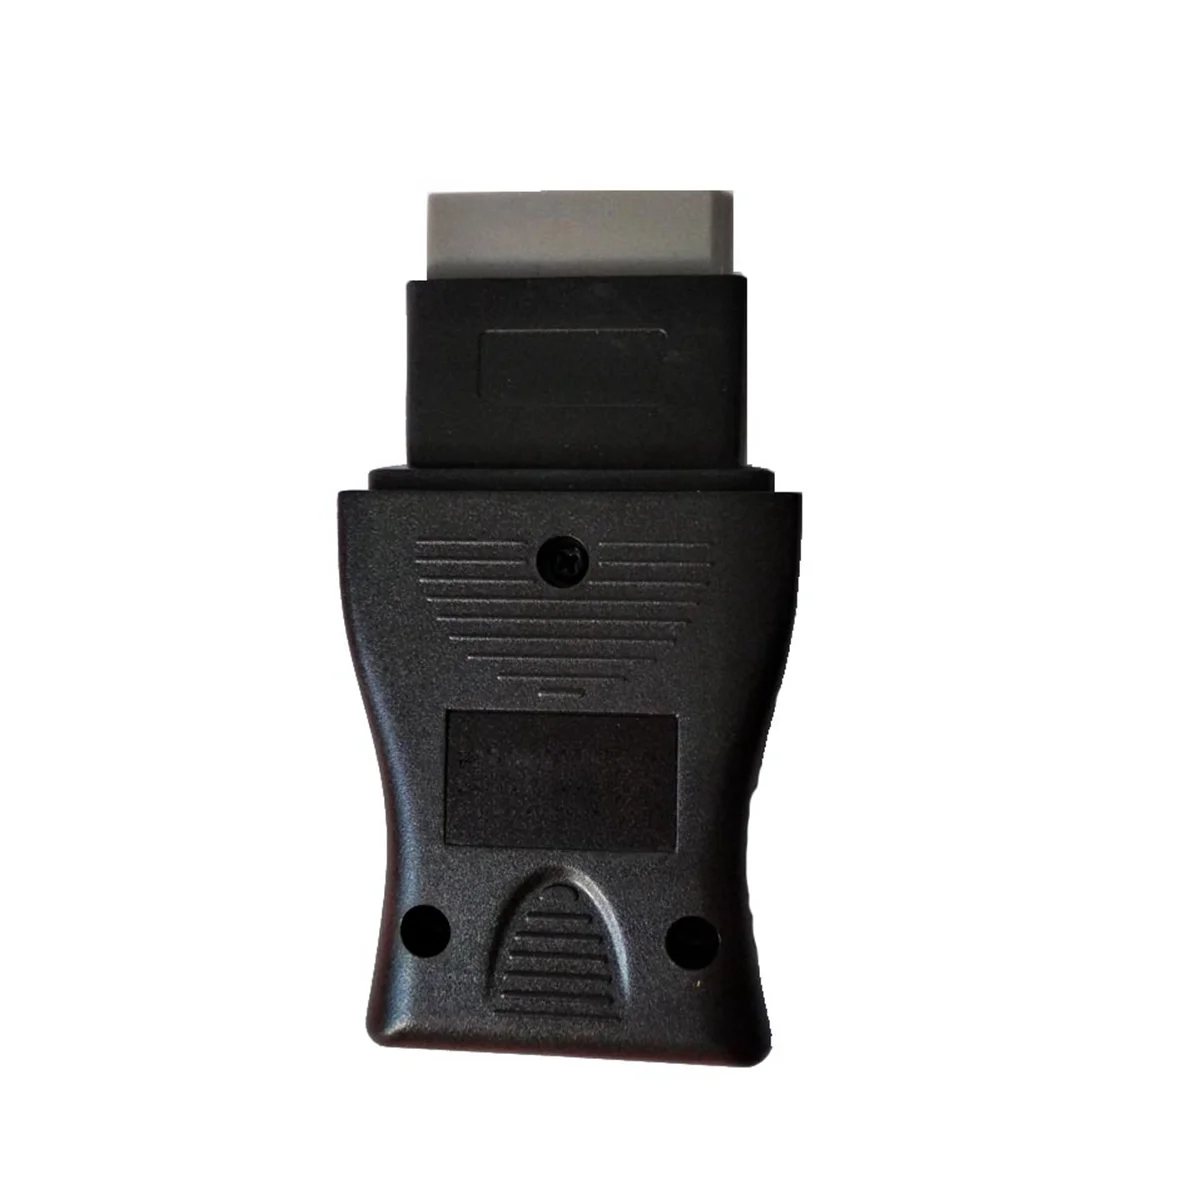 14 פינים עבור ניסן התייעץ עם ממשק 14Pin USB רכב אבחון תקלות OBD קוד כבל OBD כלי כדי OBD2 16Pin מחבר - 2